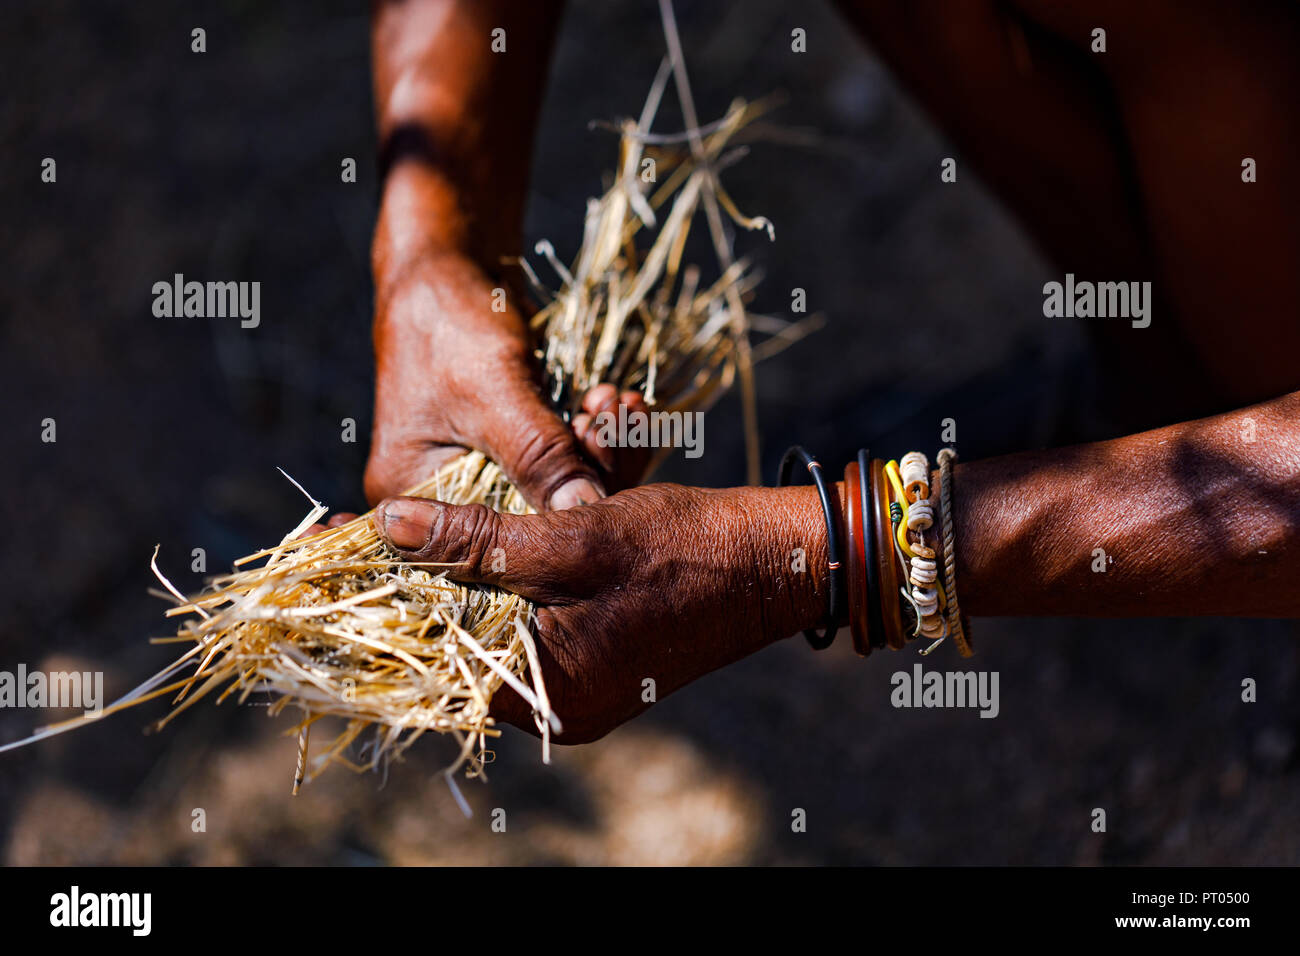 Modifier Ein Mann mit Händen markanten sammelt en Namibie Stroh, um auf traditionelle Weise Feuer zu machen Banque D'Images